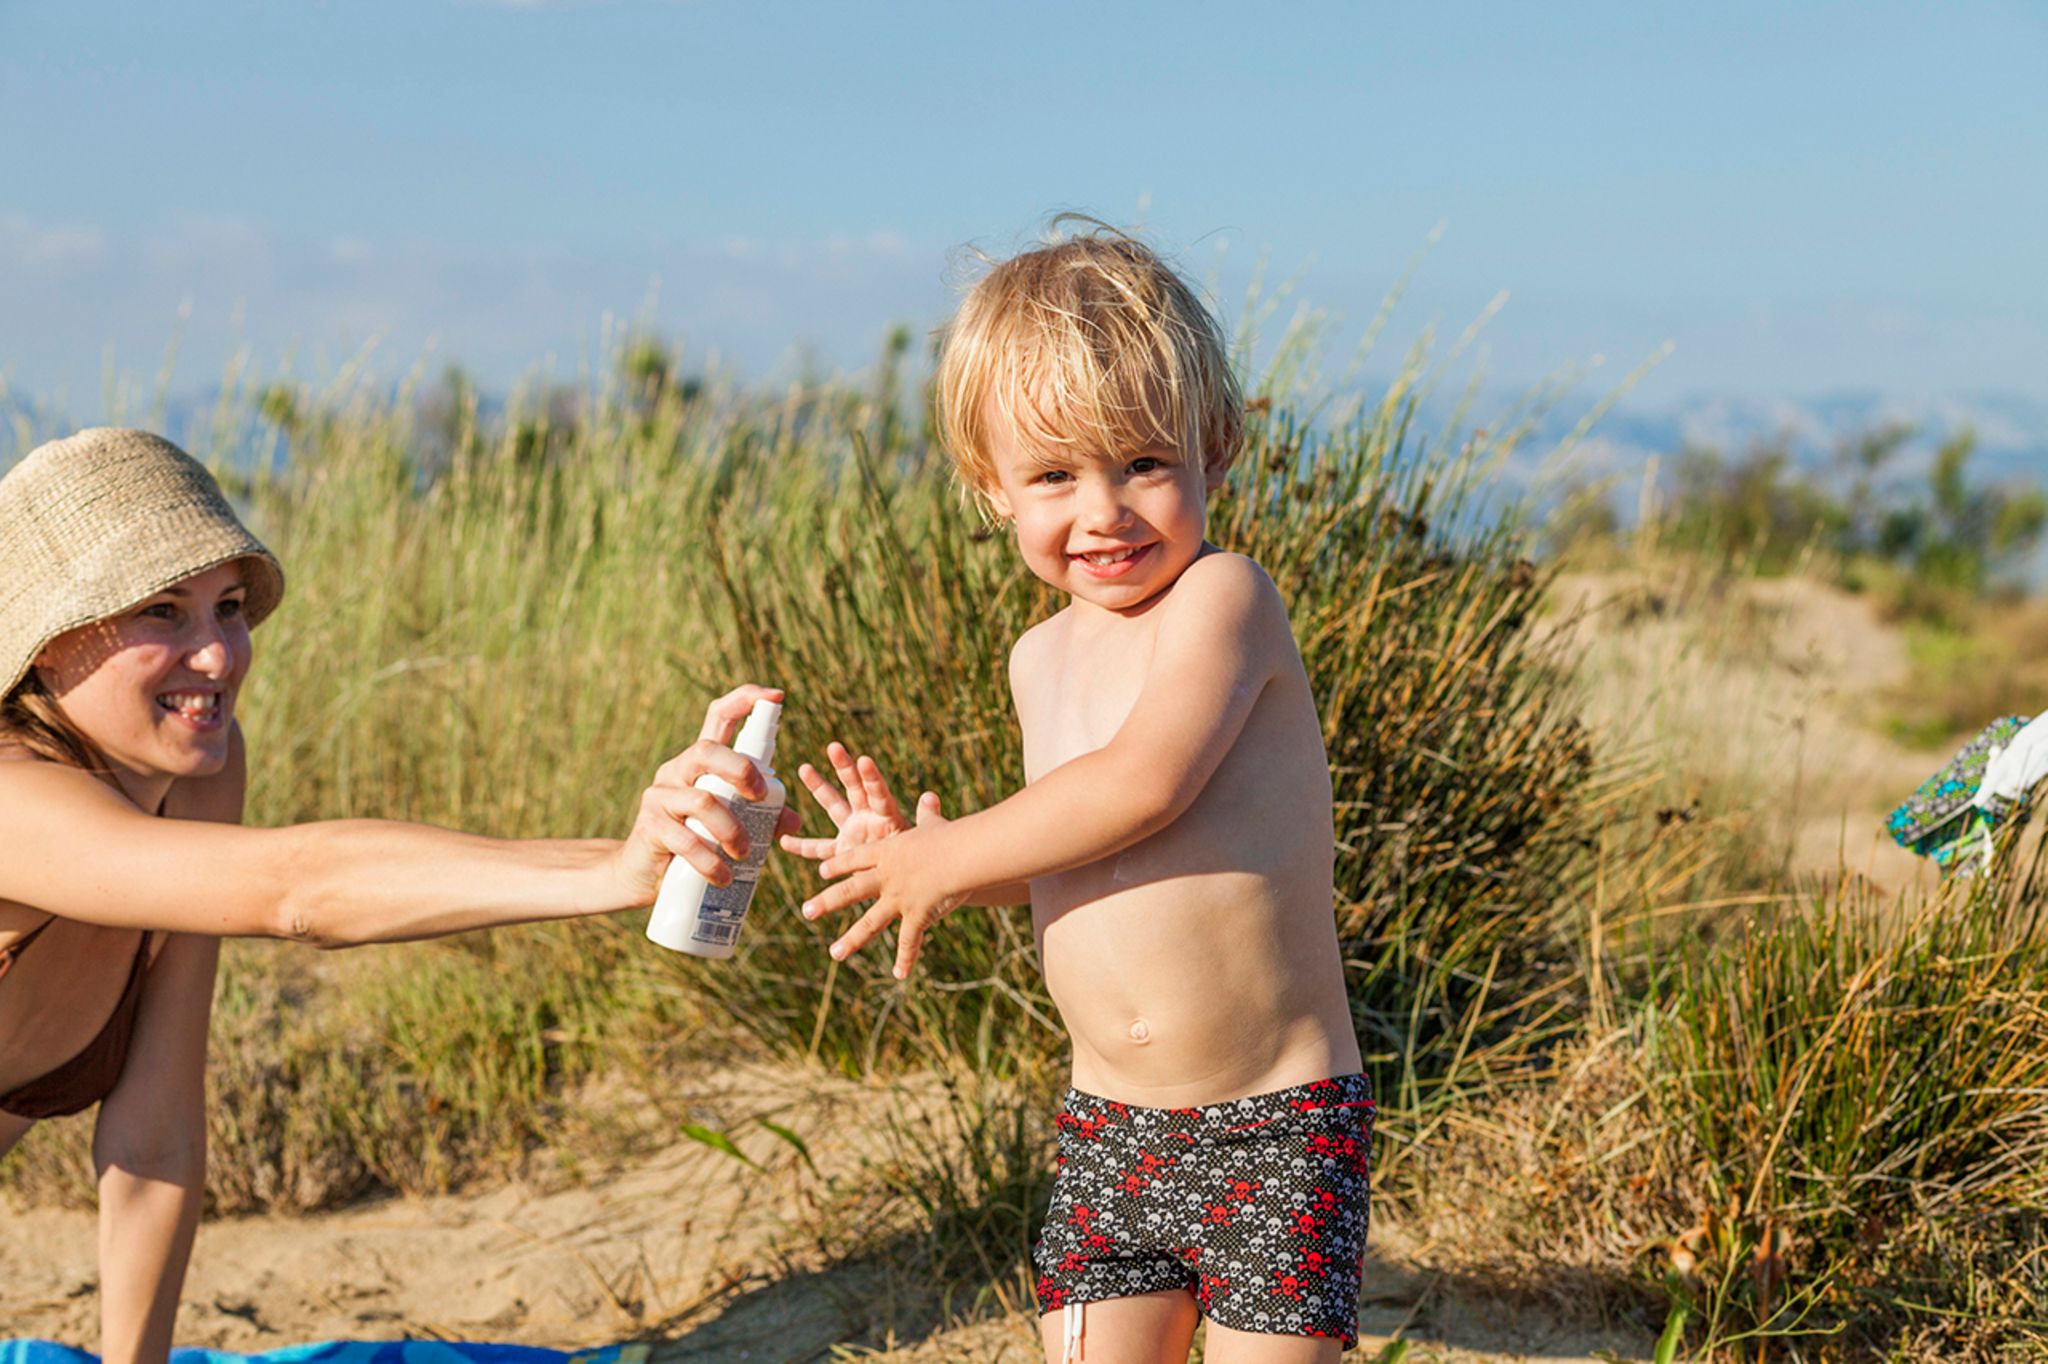 Sonnenschutz für Kinder: Richtig eincremen im Strandurlaub - [GEO]